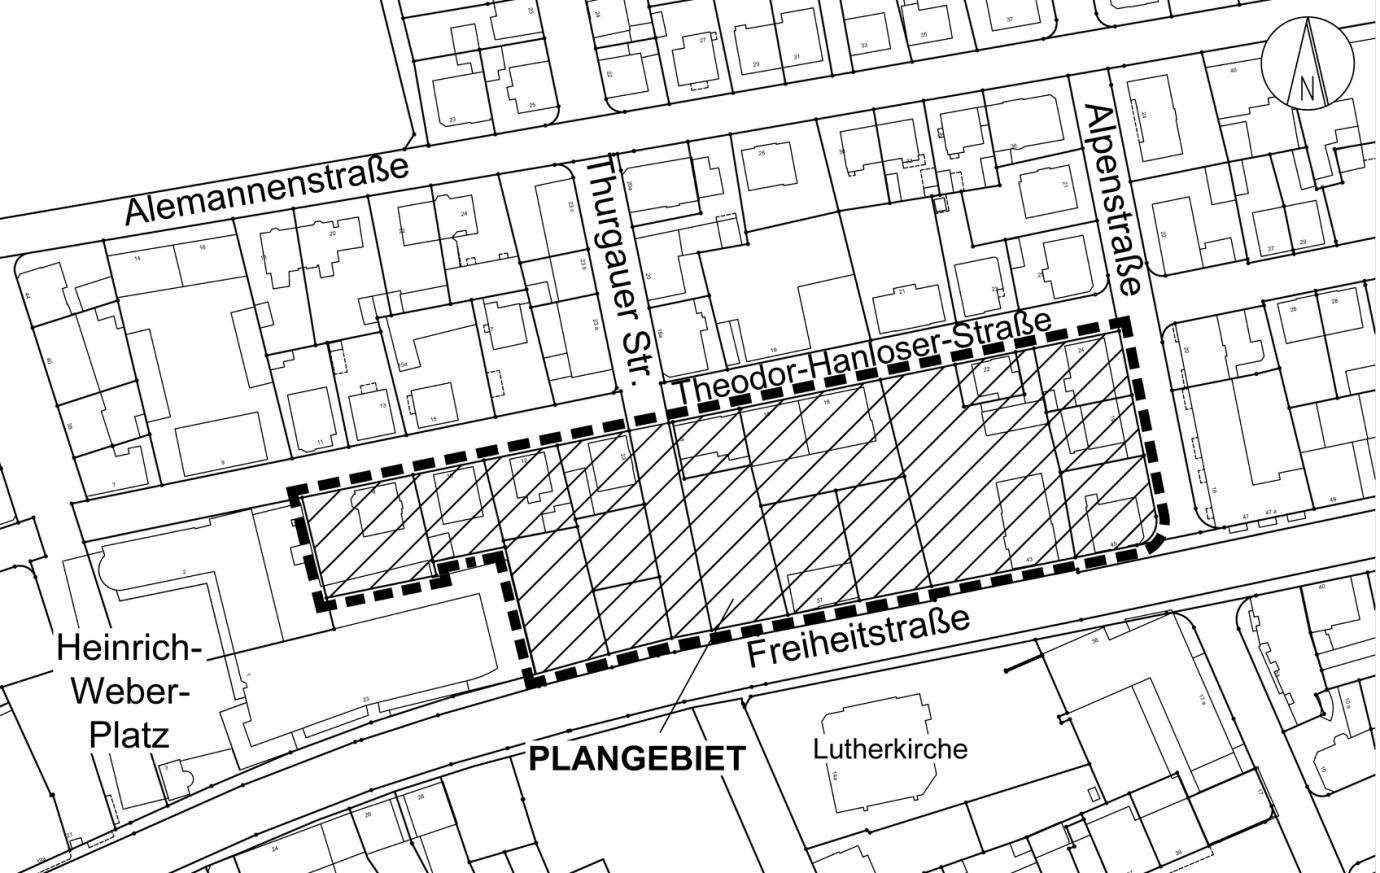 Plan zum Aufstellungsbeschluss „Freiheitstraße/Theodor-Hanloser-Straße“.